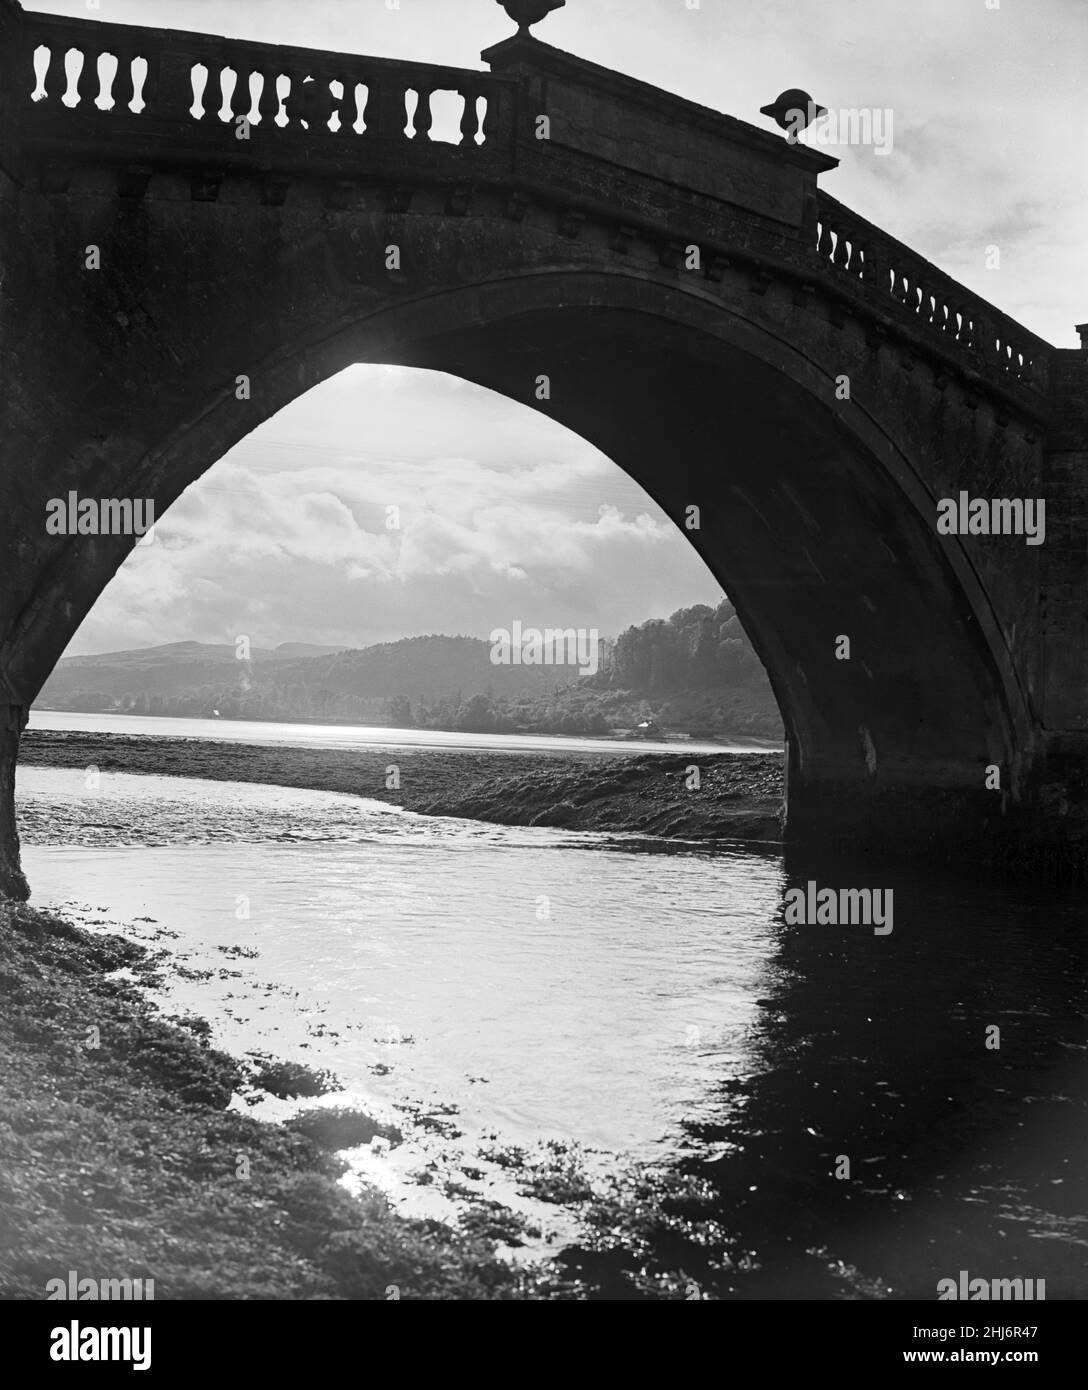 Aray Bridge, sotto il quale si incontrano il fiume Aray e Loch Fyne. Attraverso l'arco del vecchio ponte Loch Fyne può essere visto in tutto il suo splendore con sonnolenta Inveraray abbracciare sulle sue rive. Argyll and Bute, Scozia, 7th novembre 1956. Foto Stock